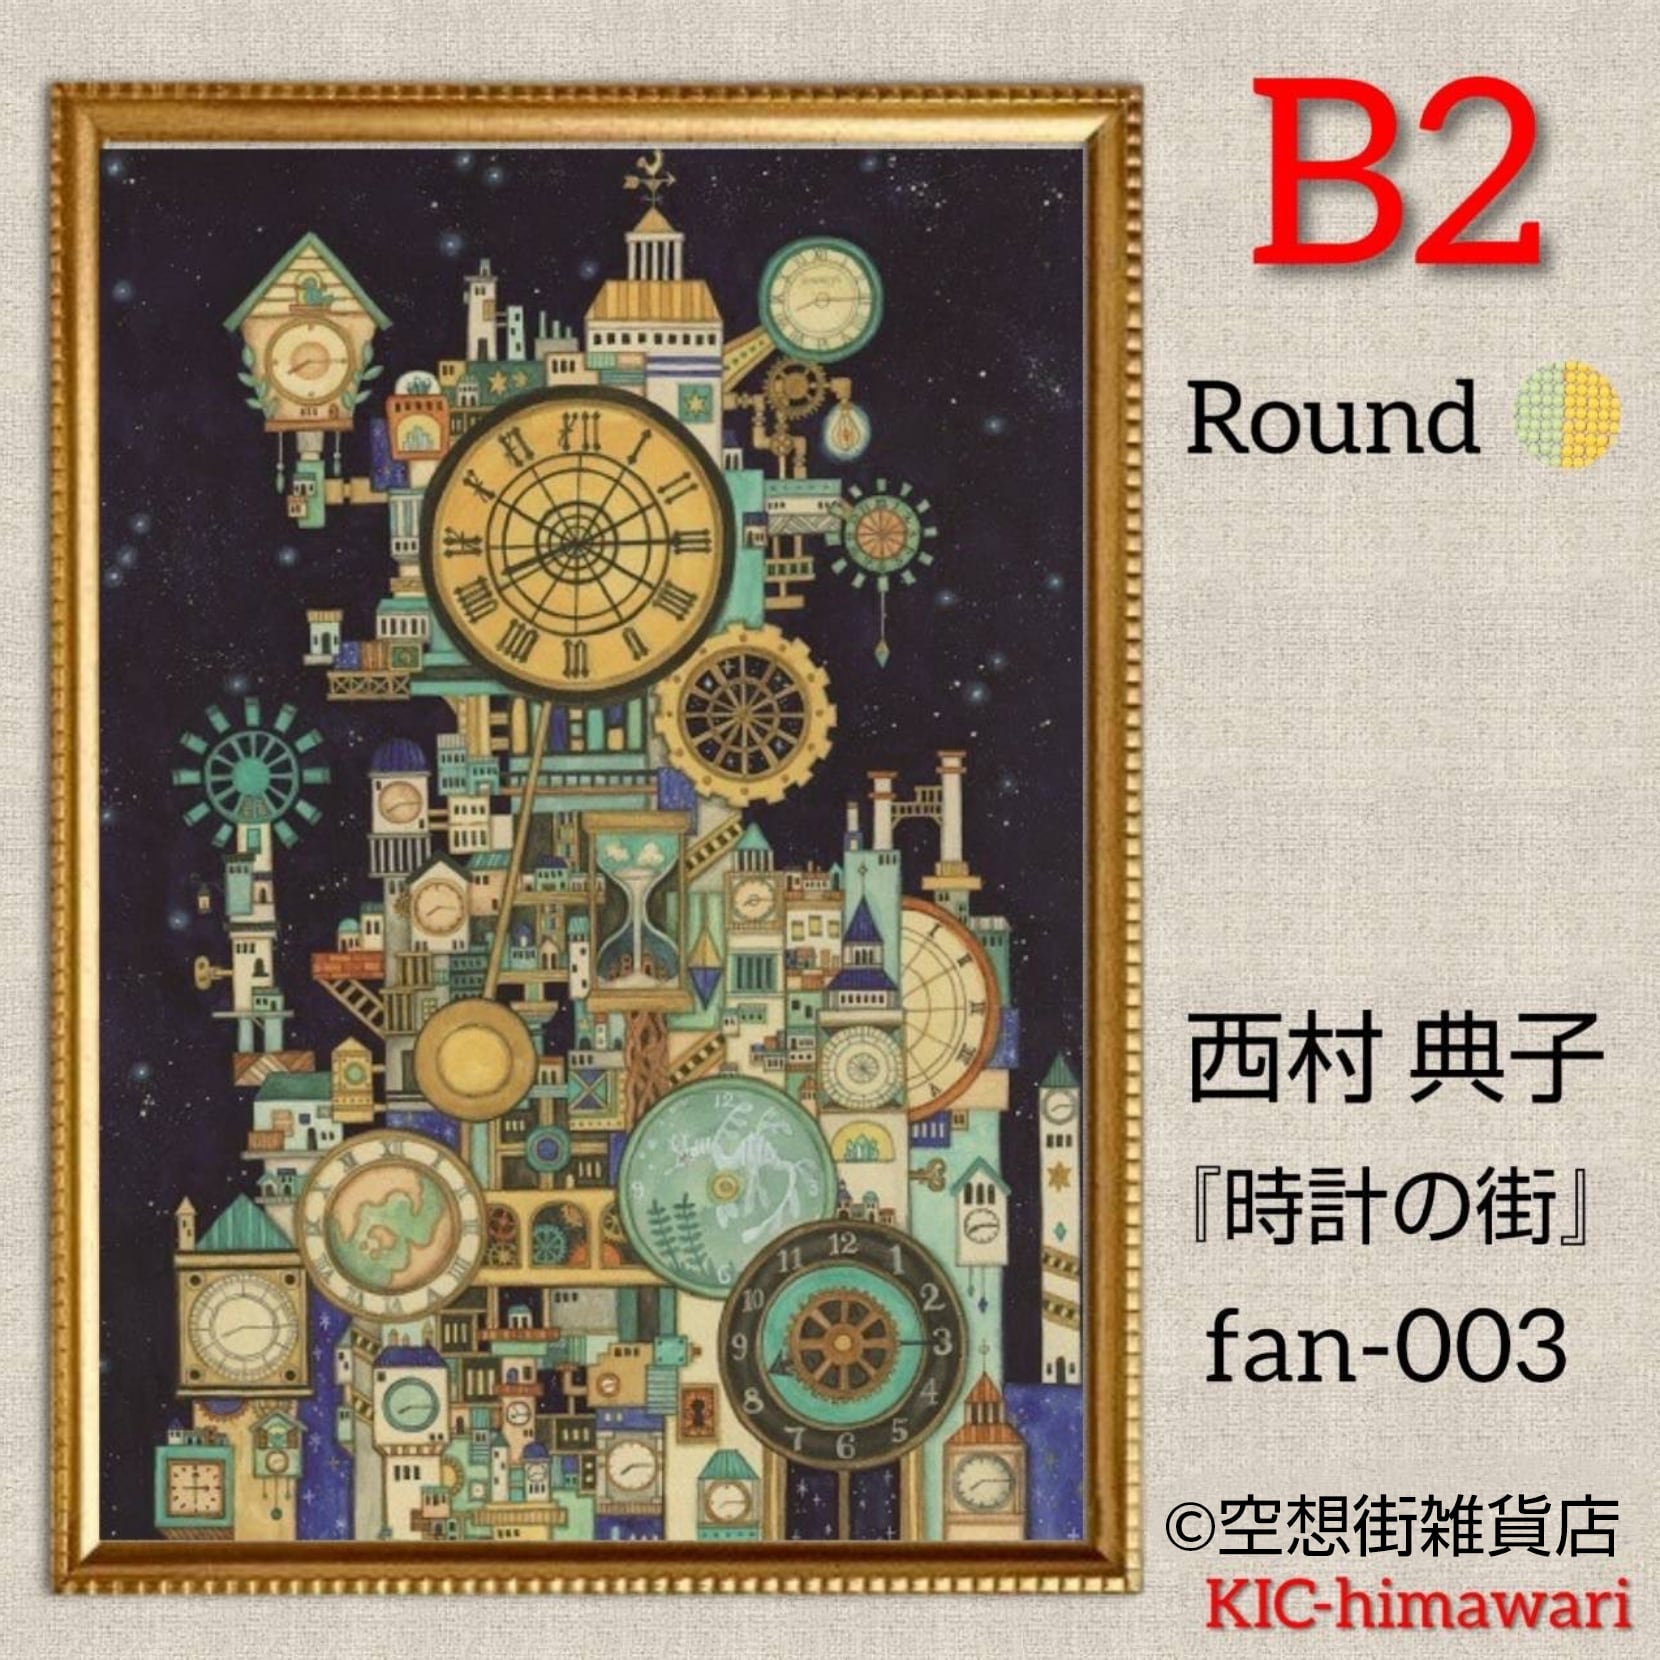 B2サイズ 丸型ビーズ【fan-003】フルダイヤモンドアート